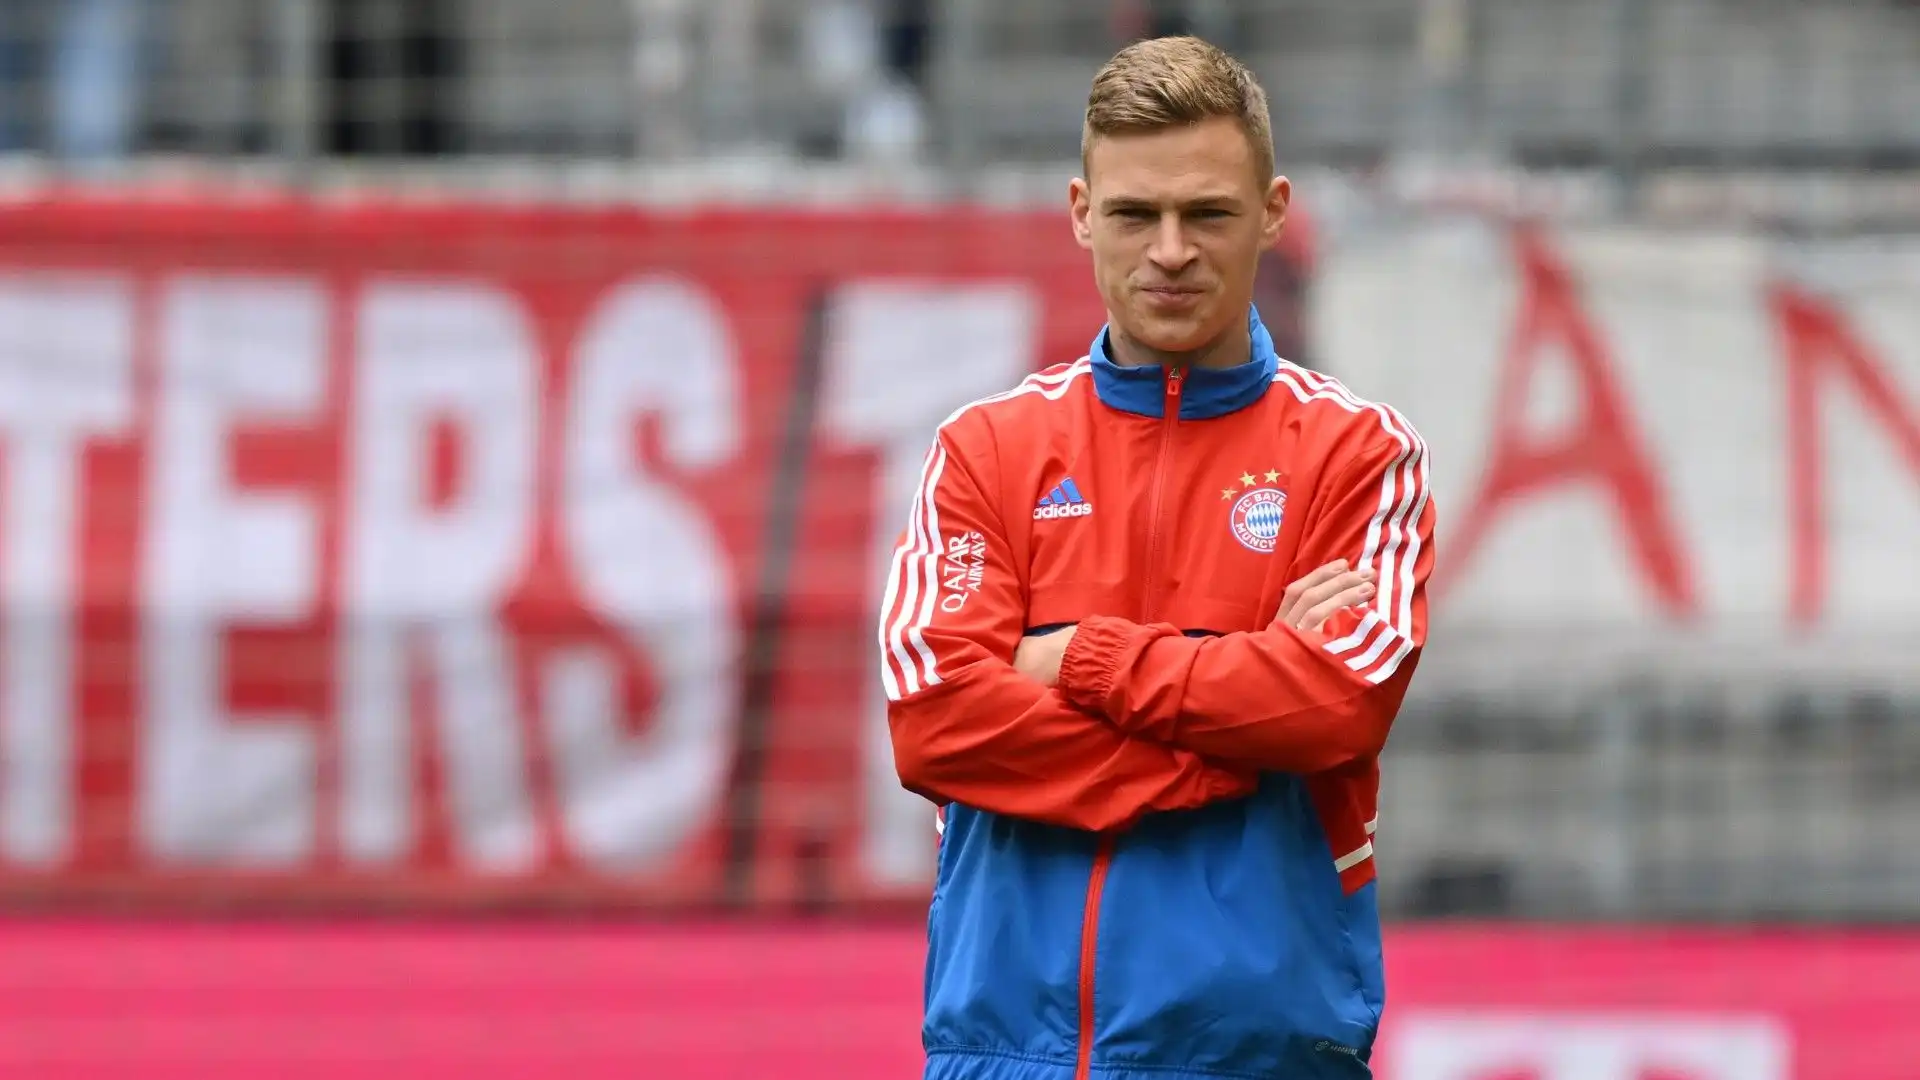 Sarà comunque difficile convincere il Bayern Monaco a vendere uno dei suoi migliori calciatori